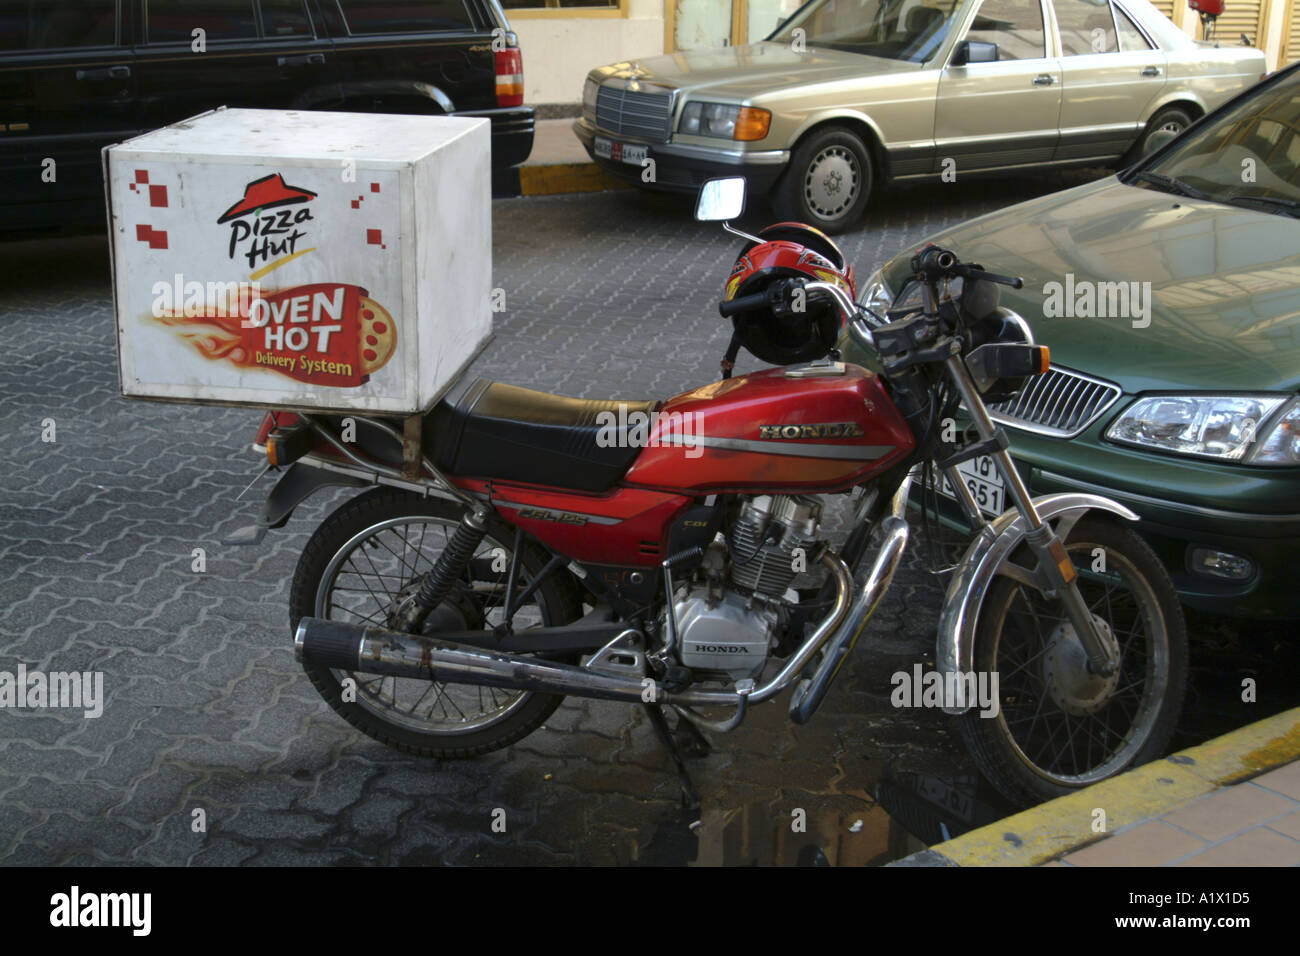 Pizzaria Baby de Lins - Algum motoqueiro com moto pra fazer um extra aqui  na pizzaria hoje (domingo)?